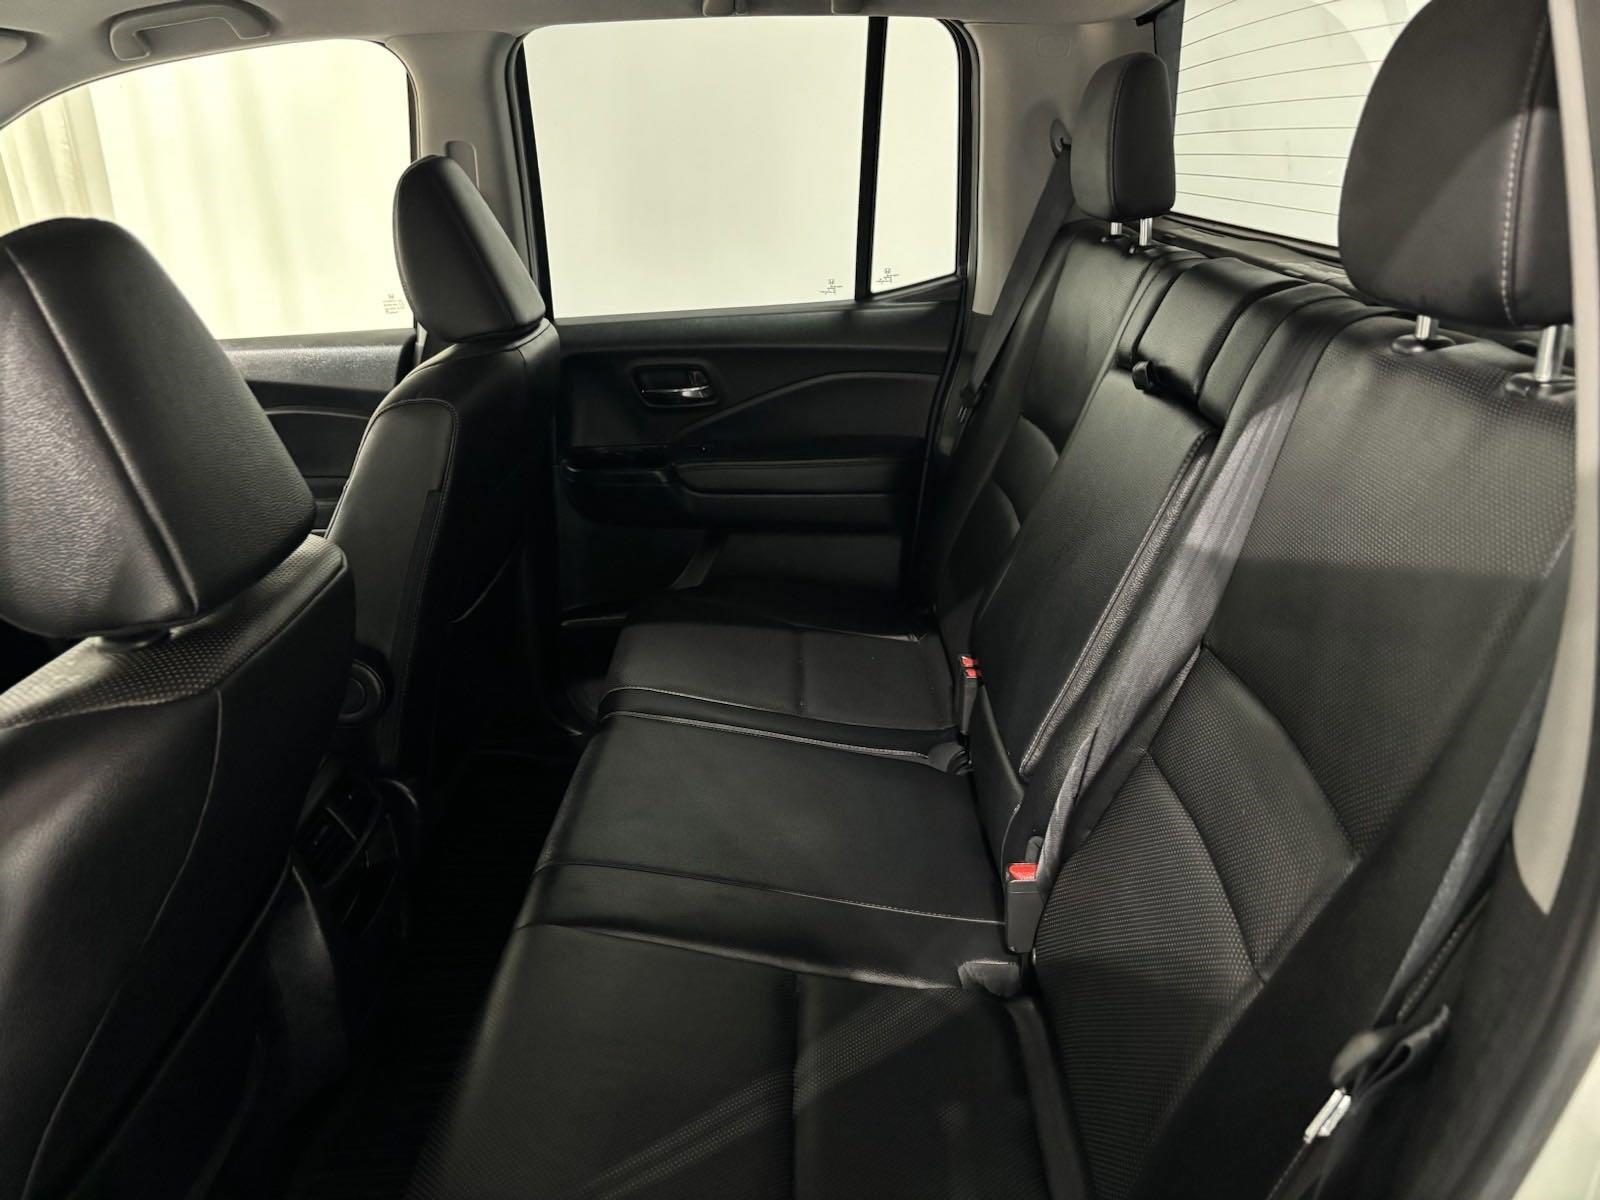 Used 2017 Honda Ridgeline RTL-T Crew Cab Truck for sale in St Joseph MO